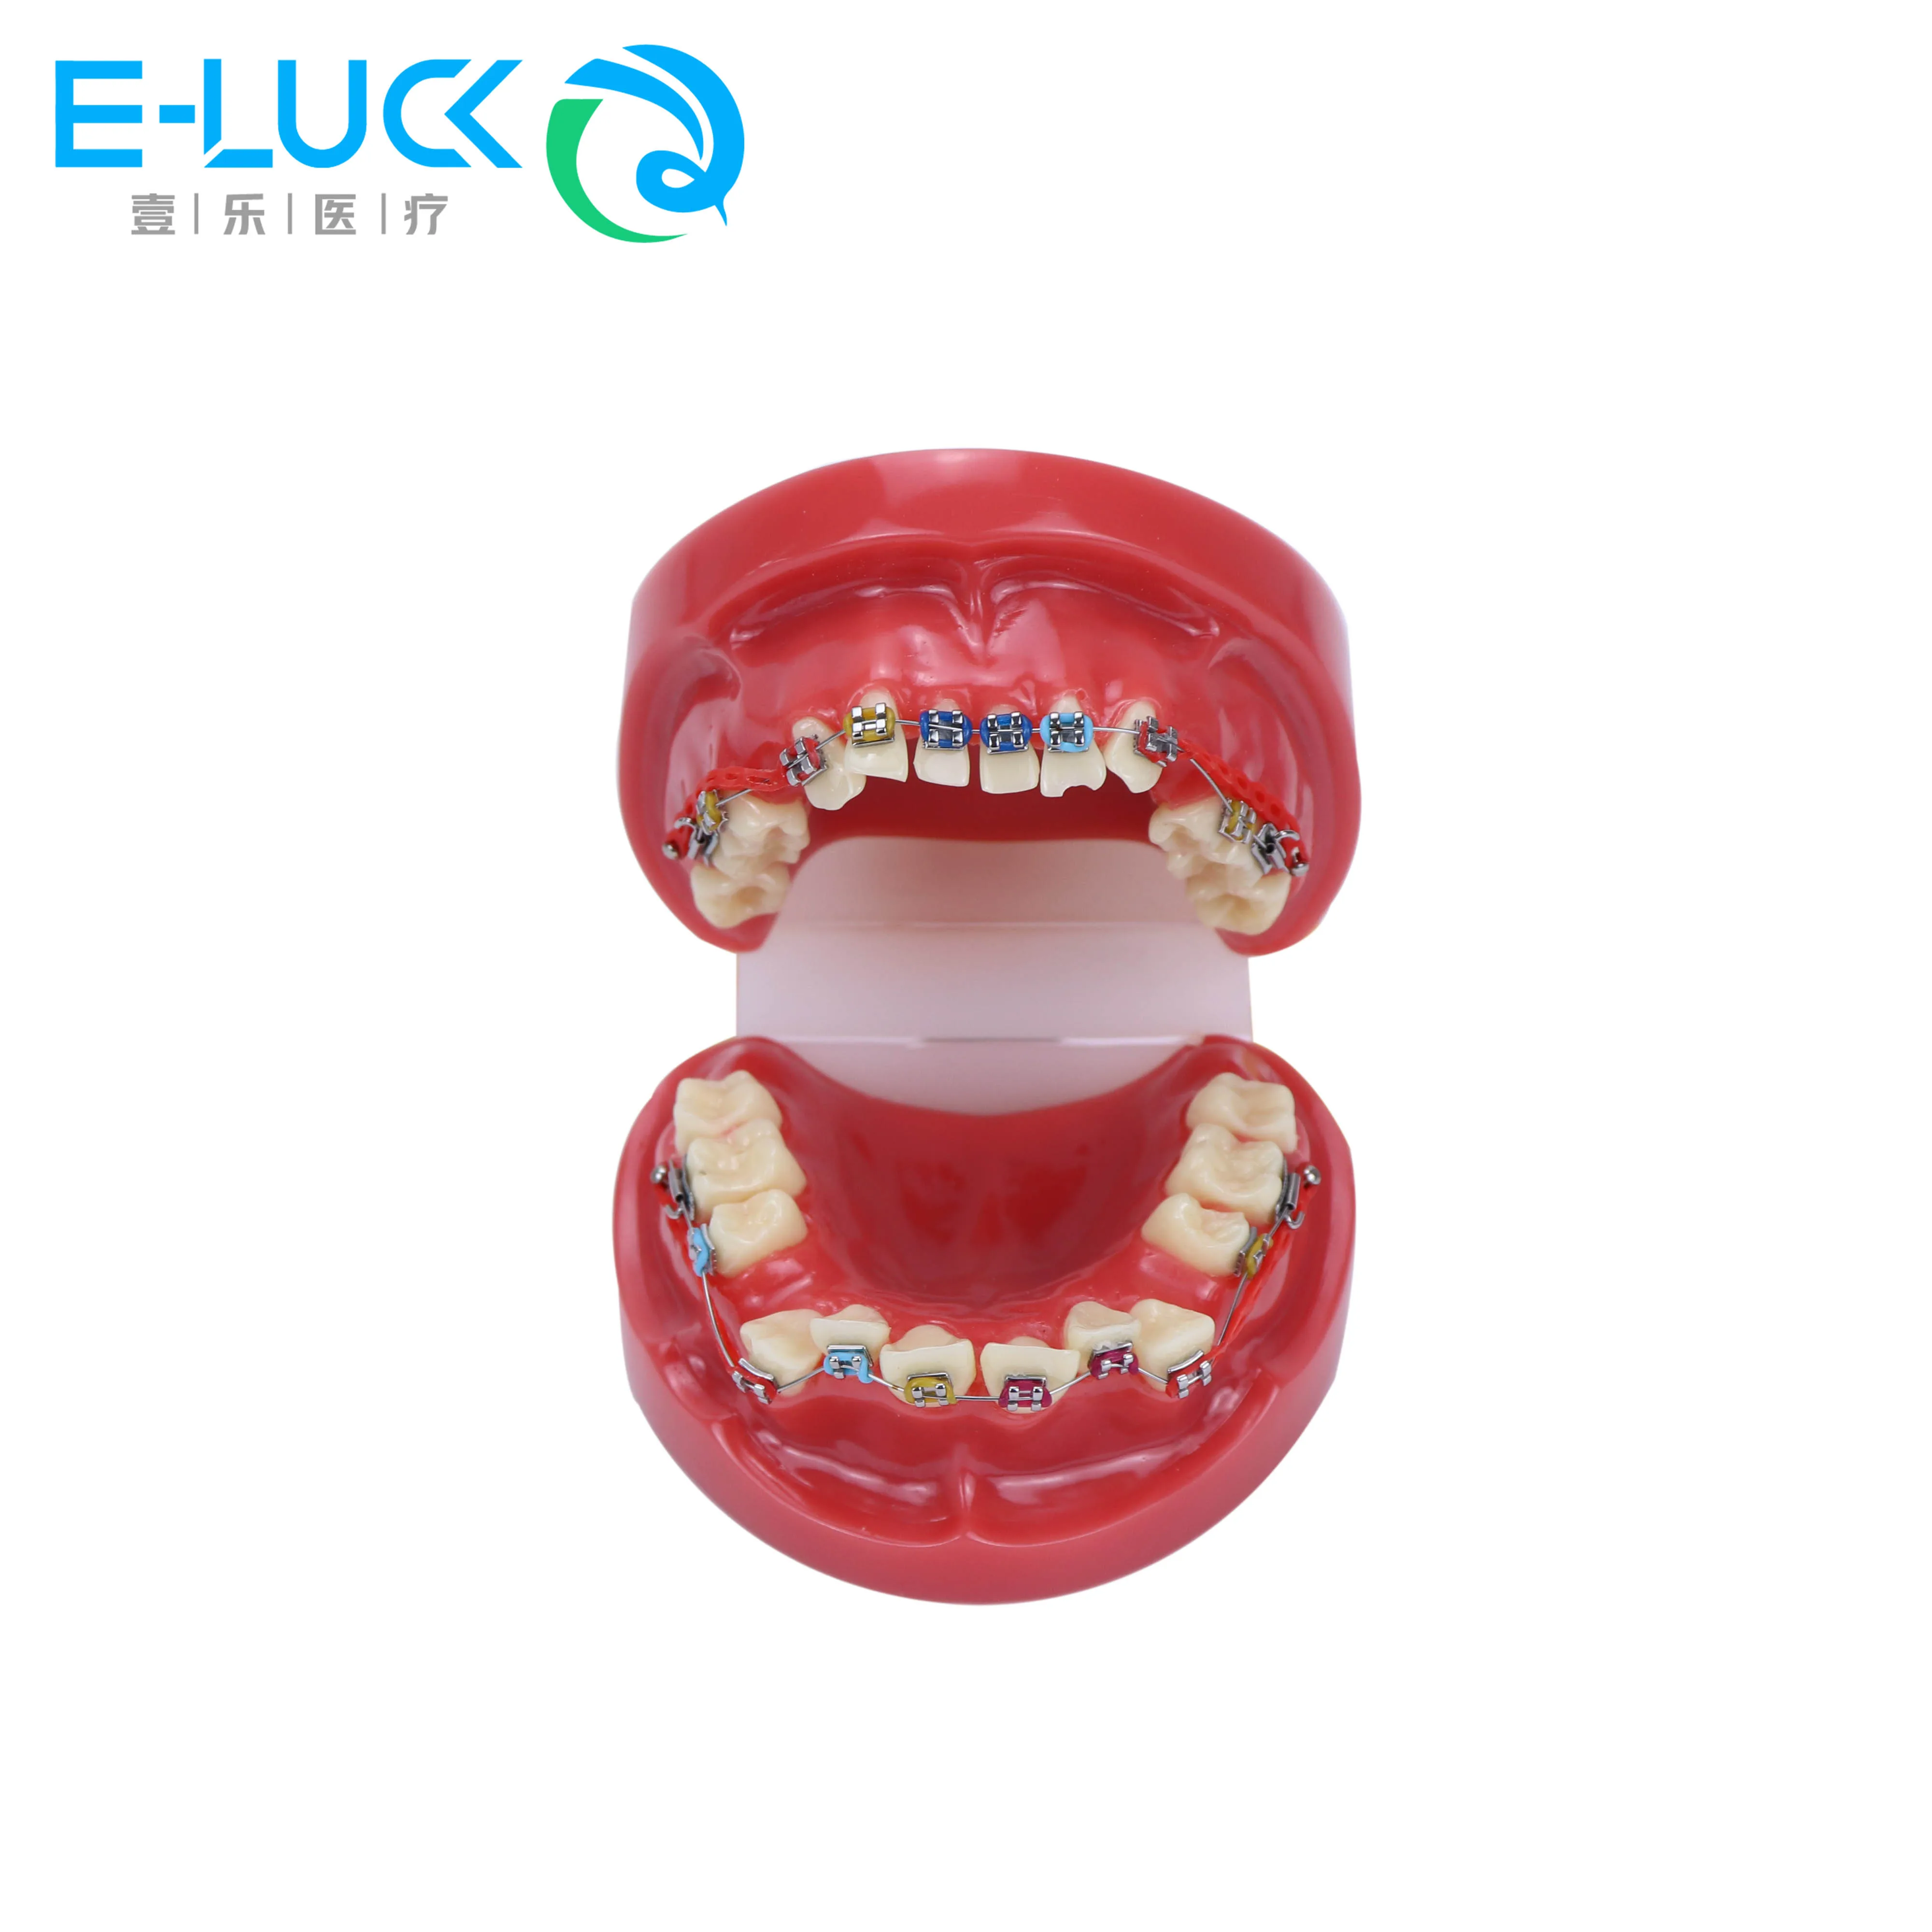 שיניים אורתודונטיה שיניים דגם מתכת הסוגר קשת חוט תיקון אורתודונטי דגם עם שיניים סוגריים